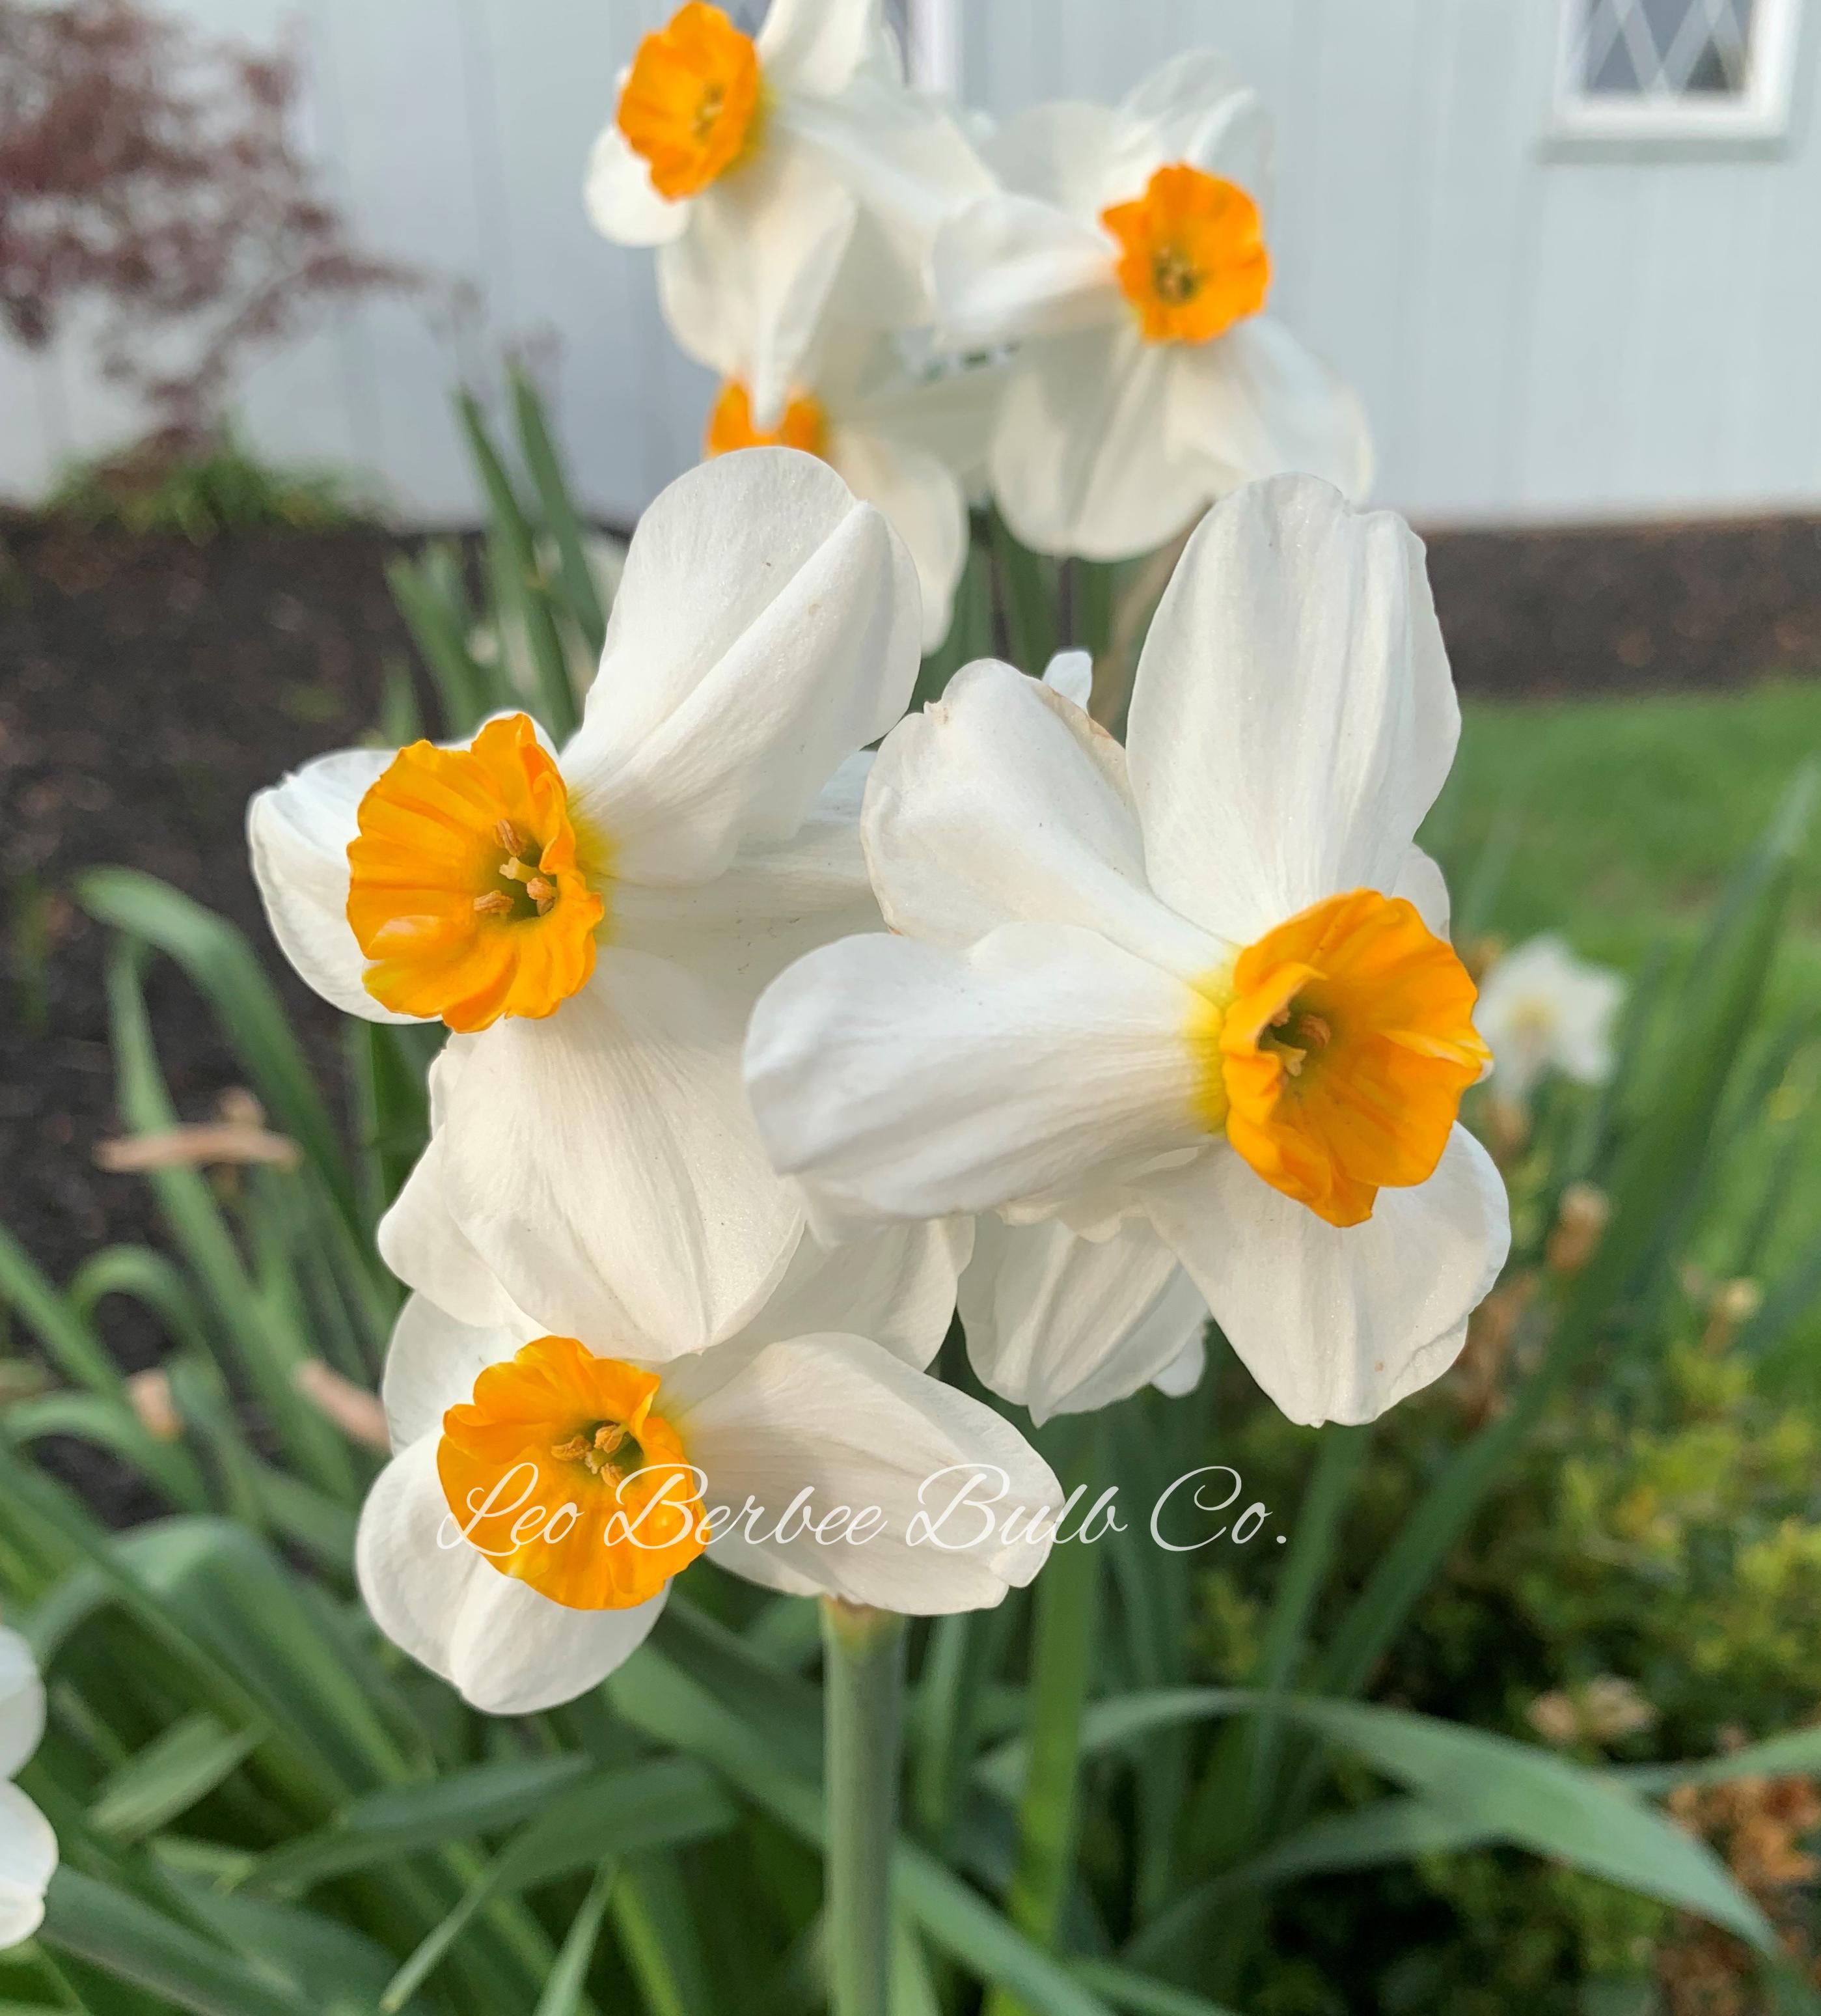 Daffodil Tazetta Geranium from Leo Berbee Bulb Company